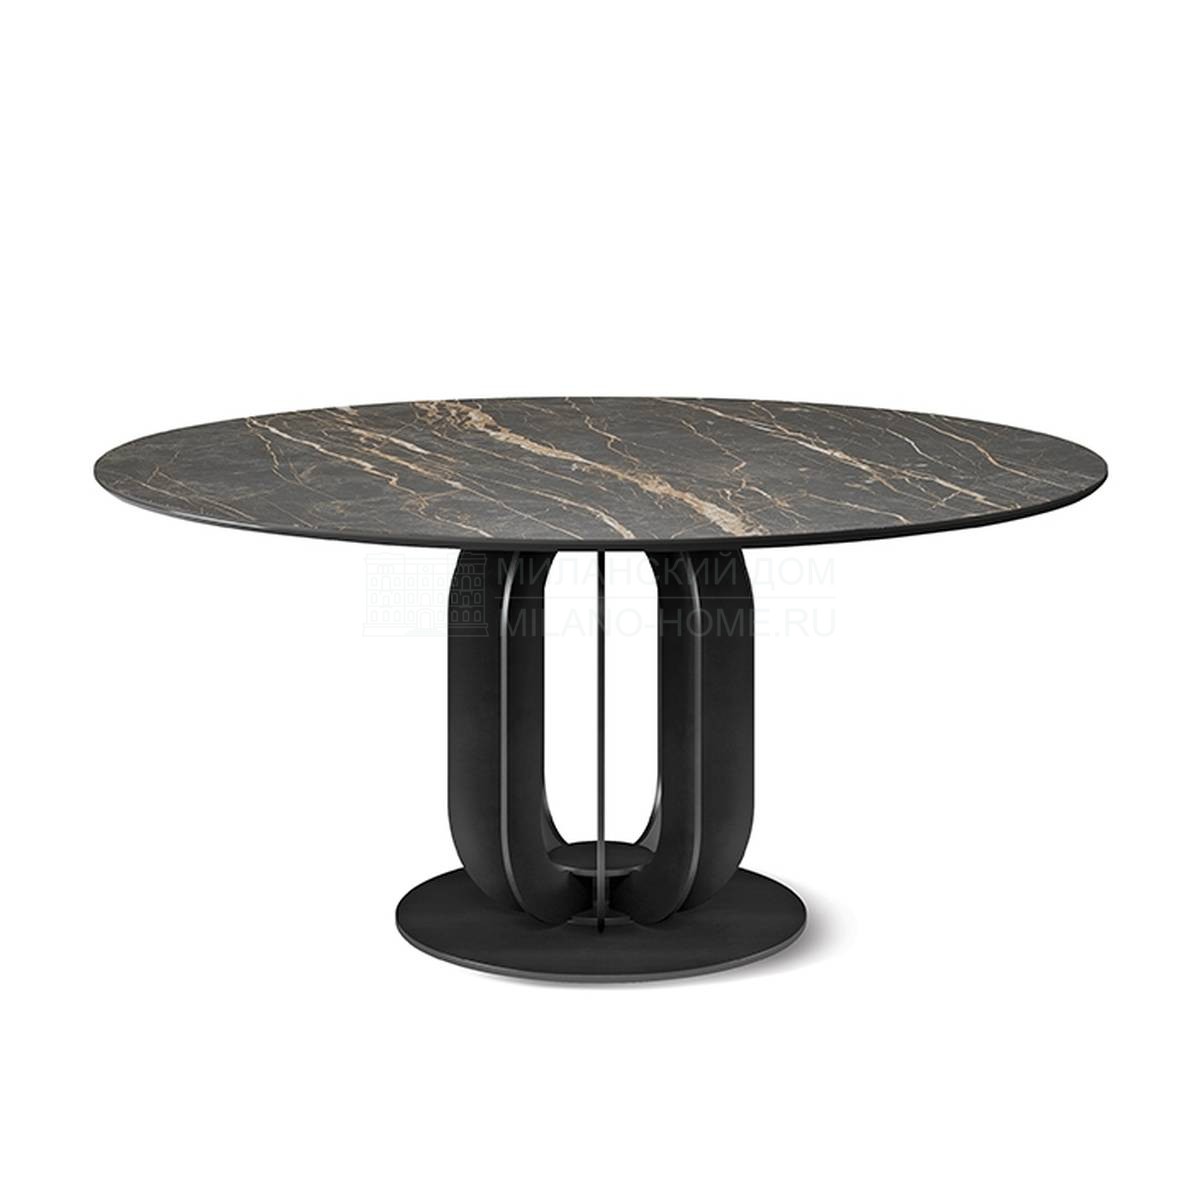 Круглый стол Soho round keramik dining table из Италии фабрики CATTELAN ITALIA